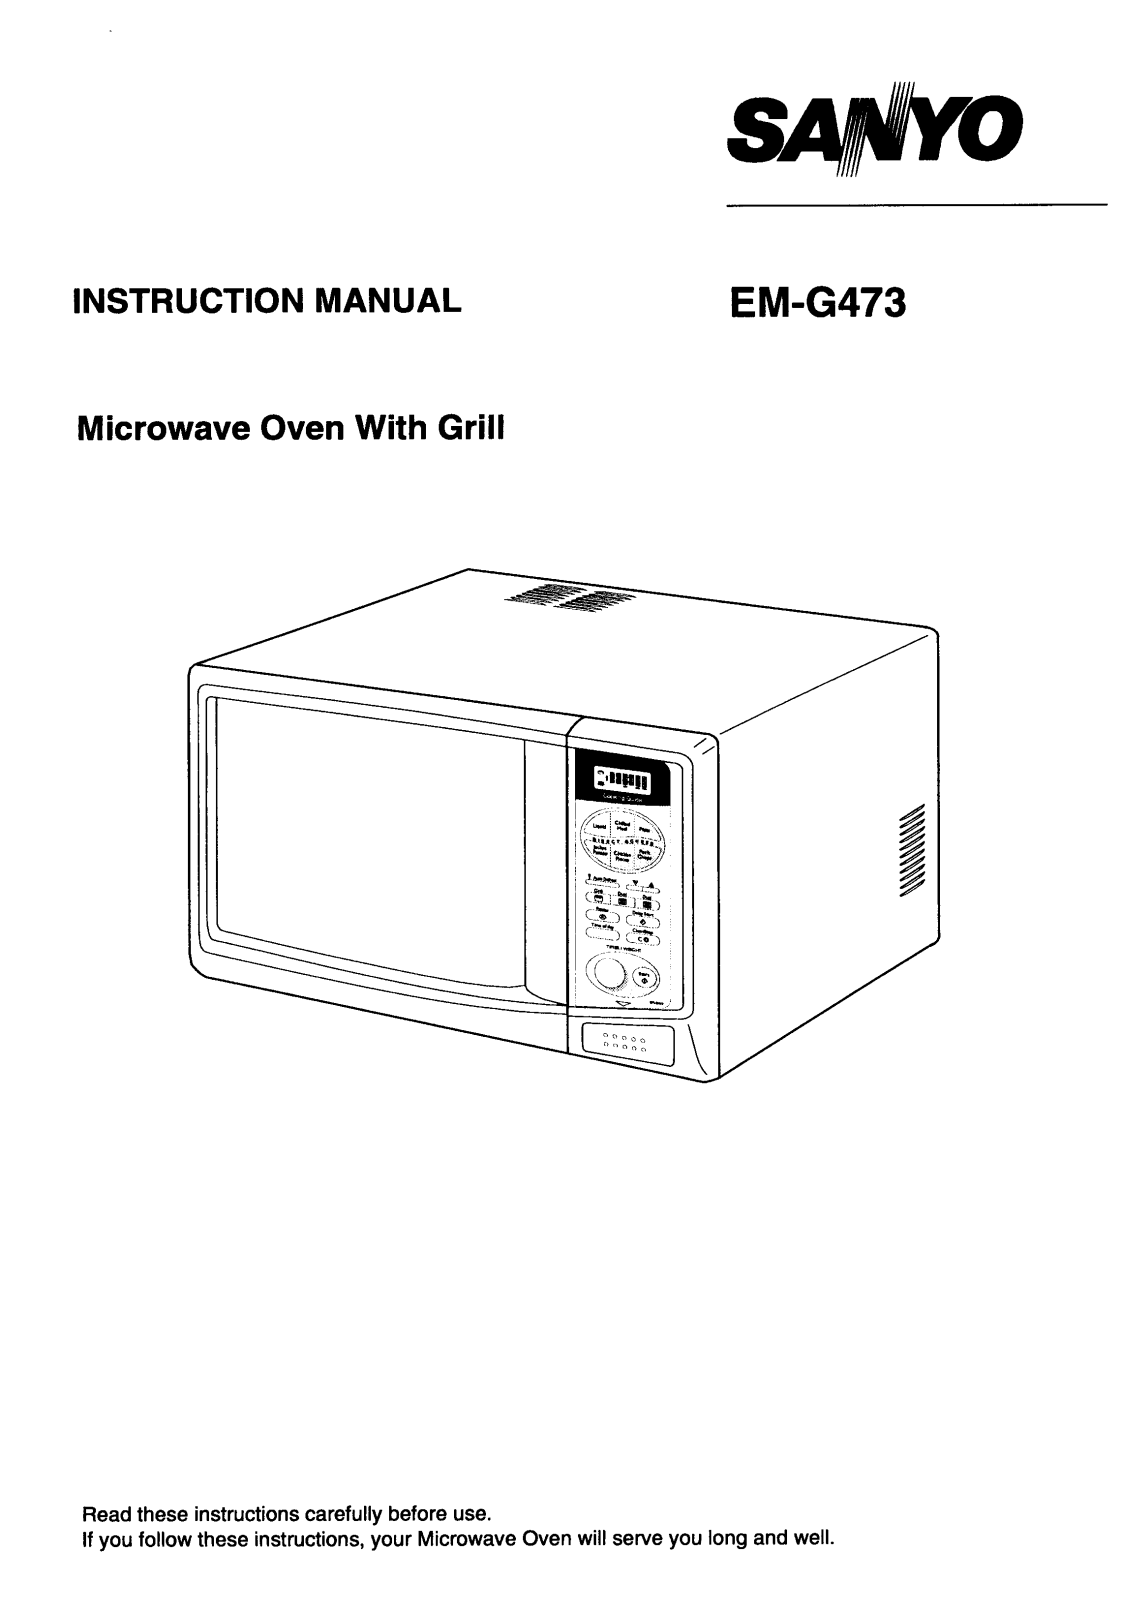 Sanyo EM-G473 Instruction Manual